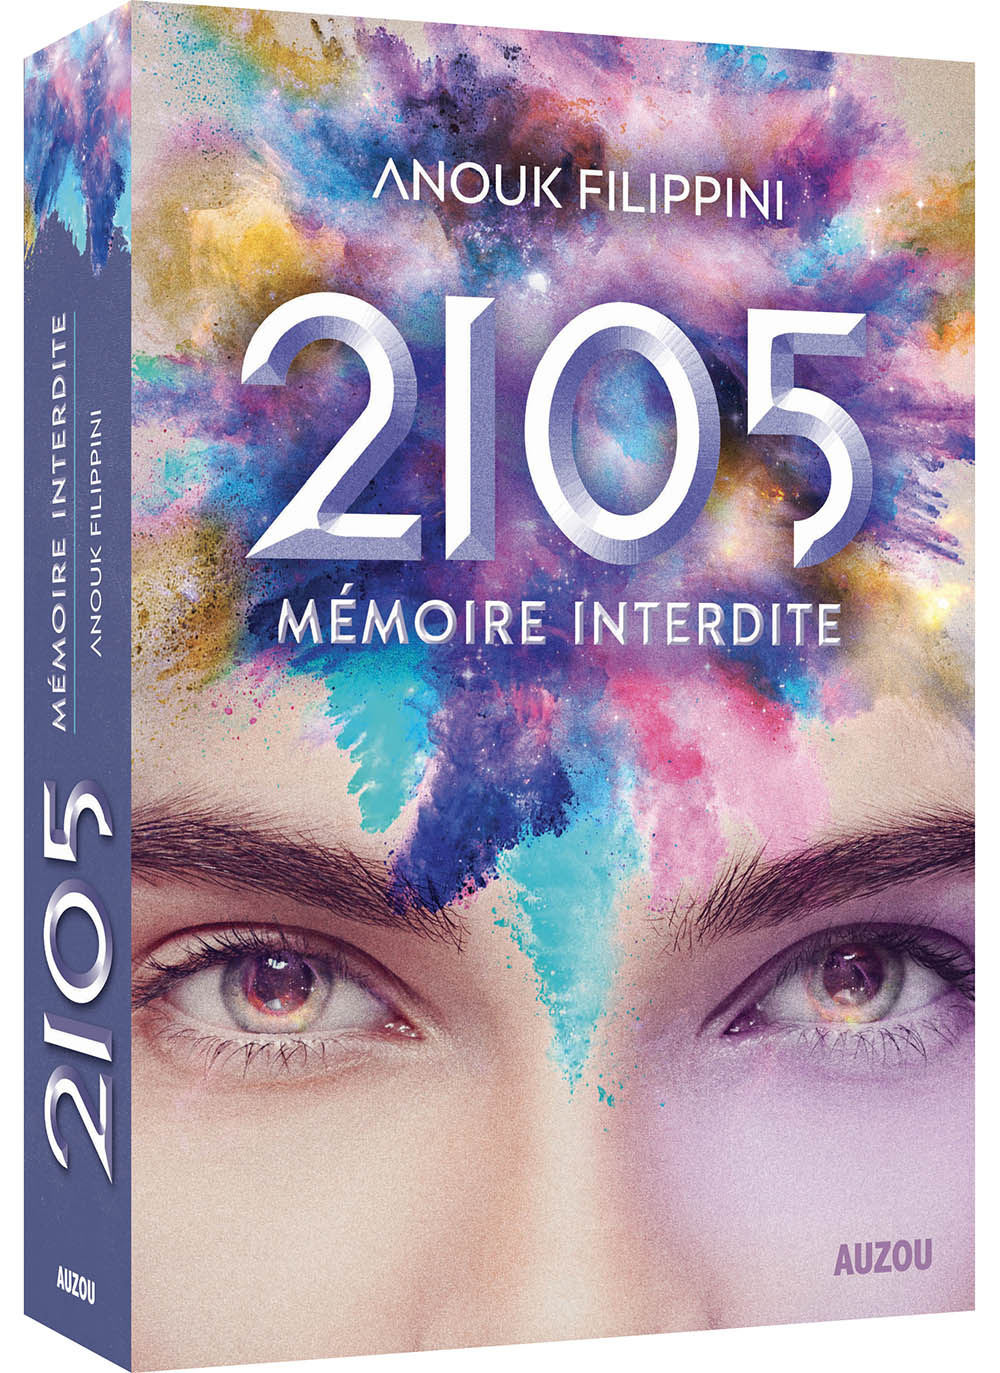 2105, Memoire Interdite